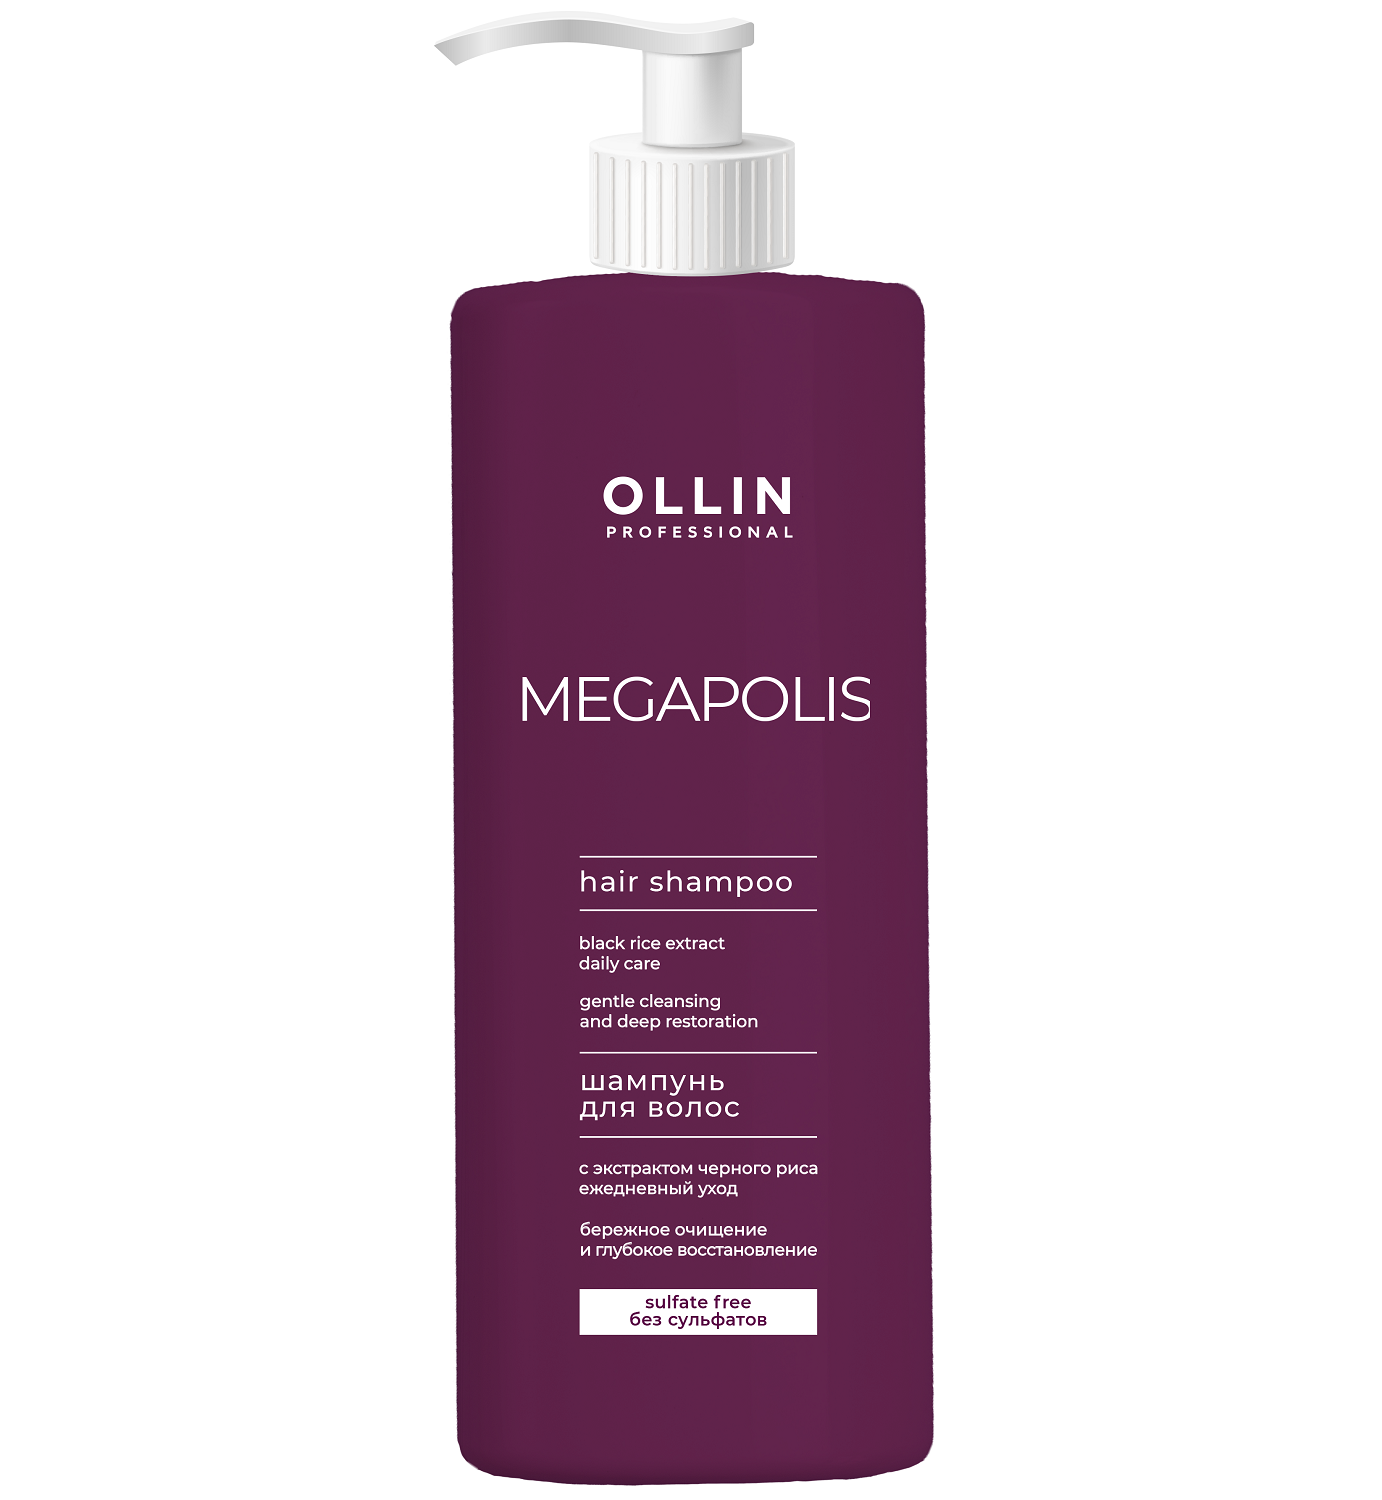 Ollin Professional Бессульфатный шампунь с экстрактом черного риса, 1000 мл (Ollin Professional, Megapolis)